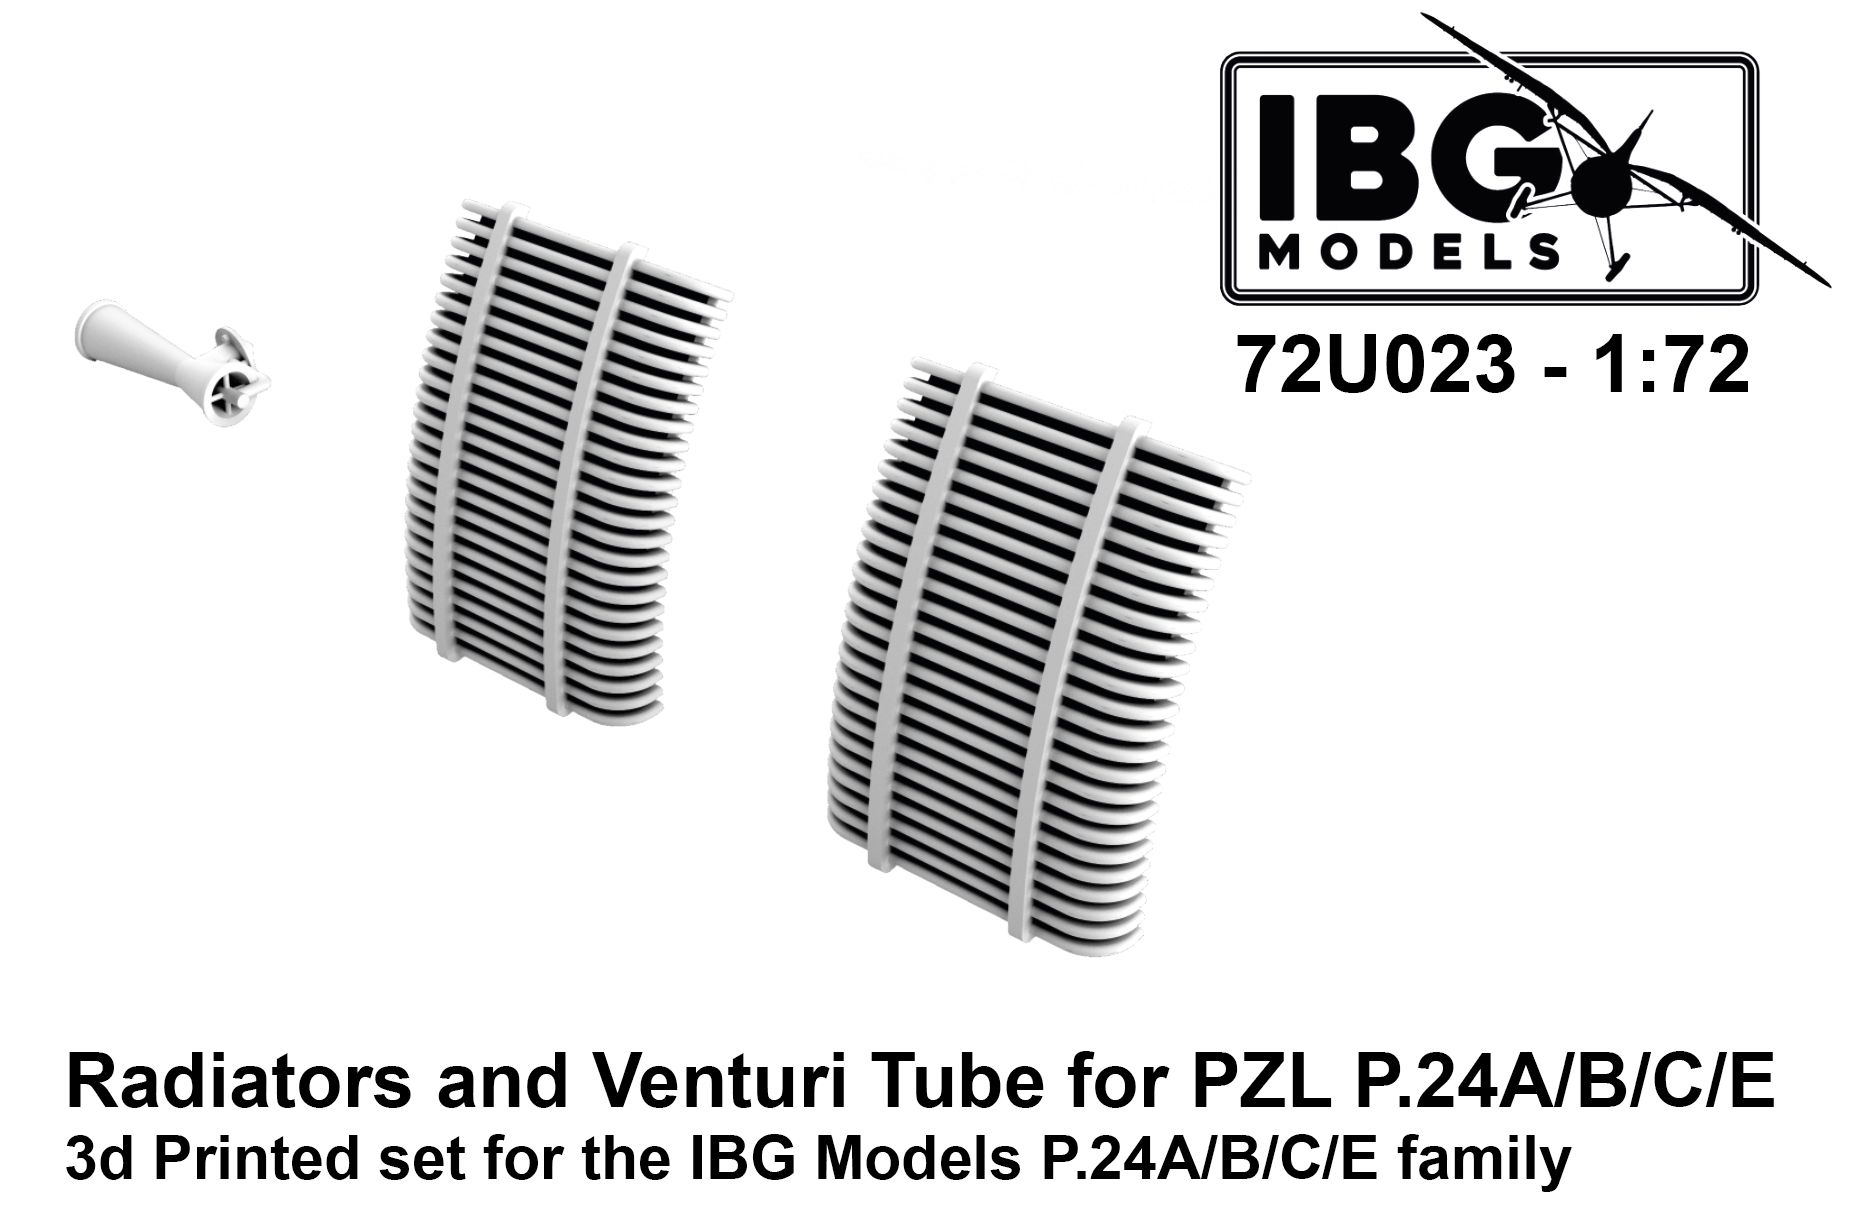 1/72 Radiators and Venturi Tube for PZL P.24A/B/C/E - 3d printed